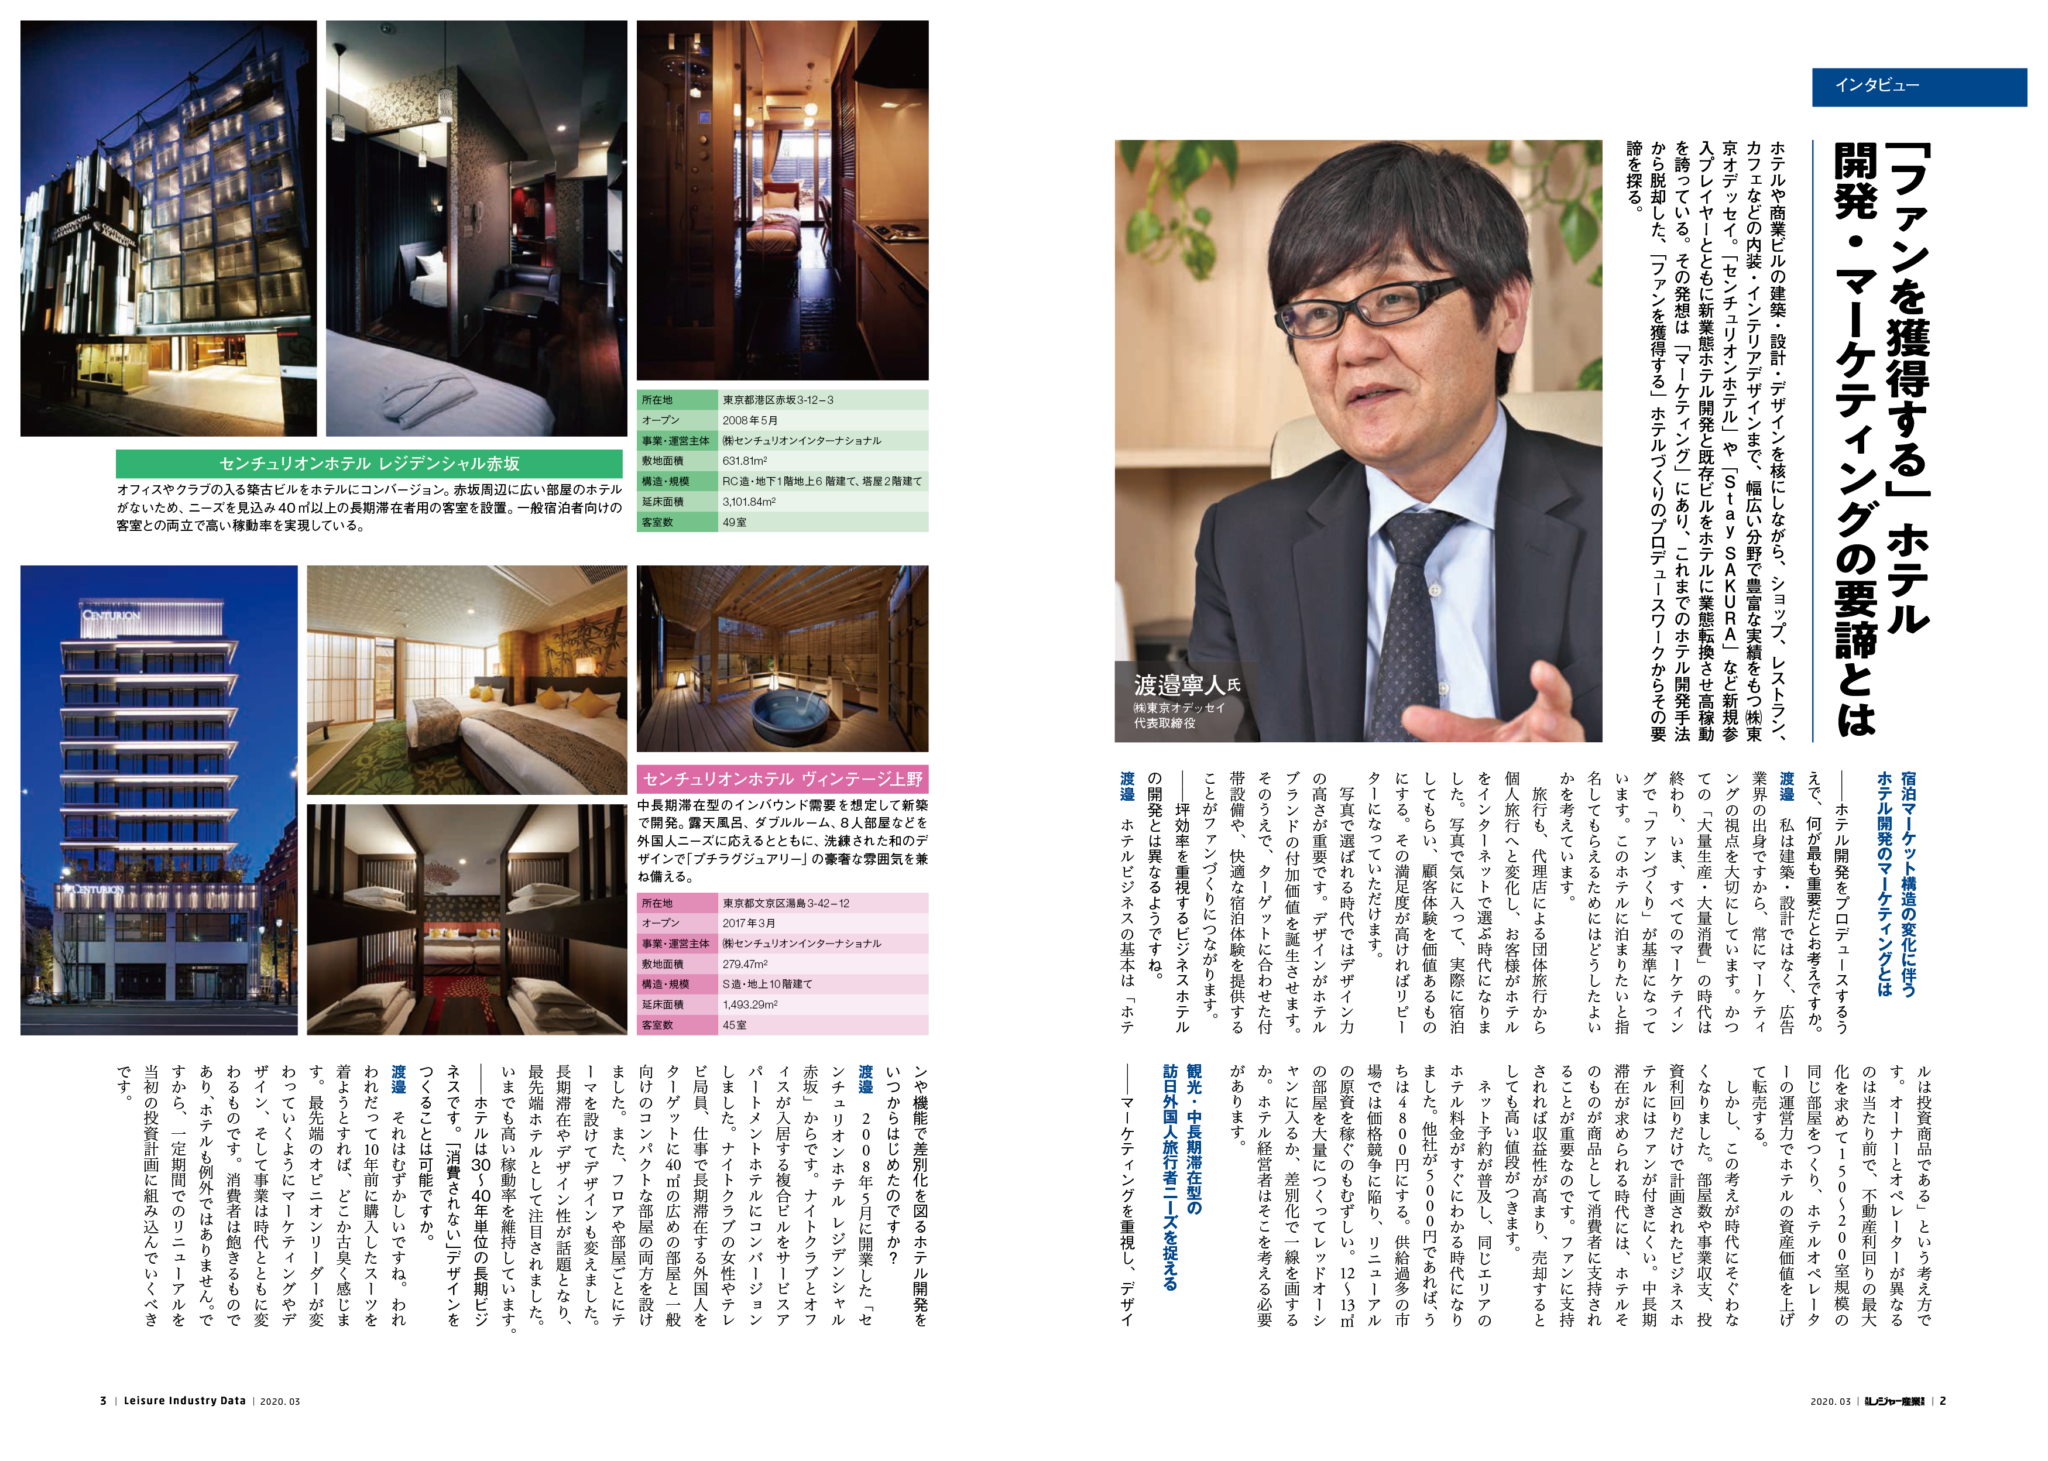 東京オデッセイのホテル設計デザインノウハウ「ファンを獲得し売上を増加させる」